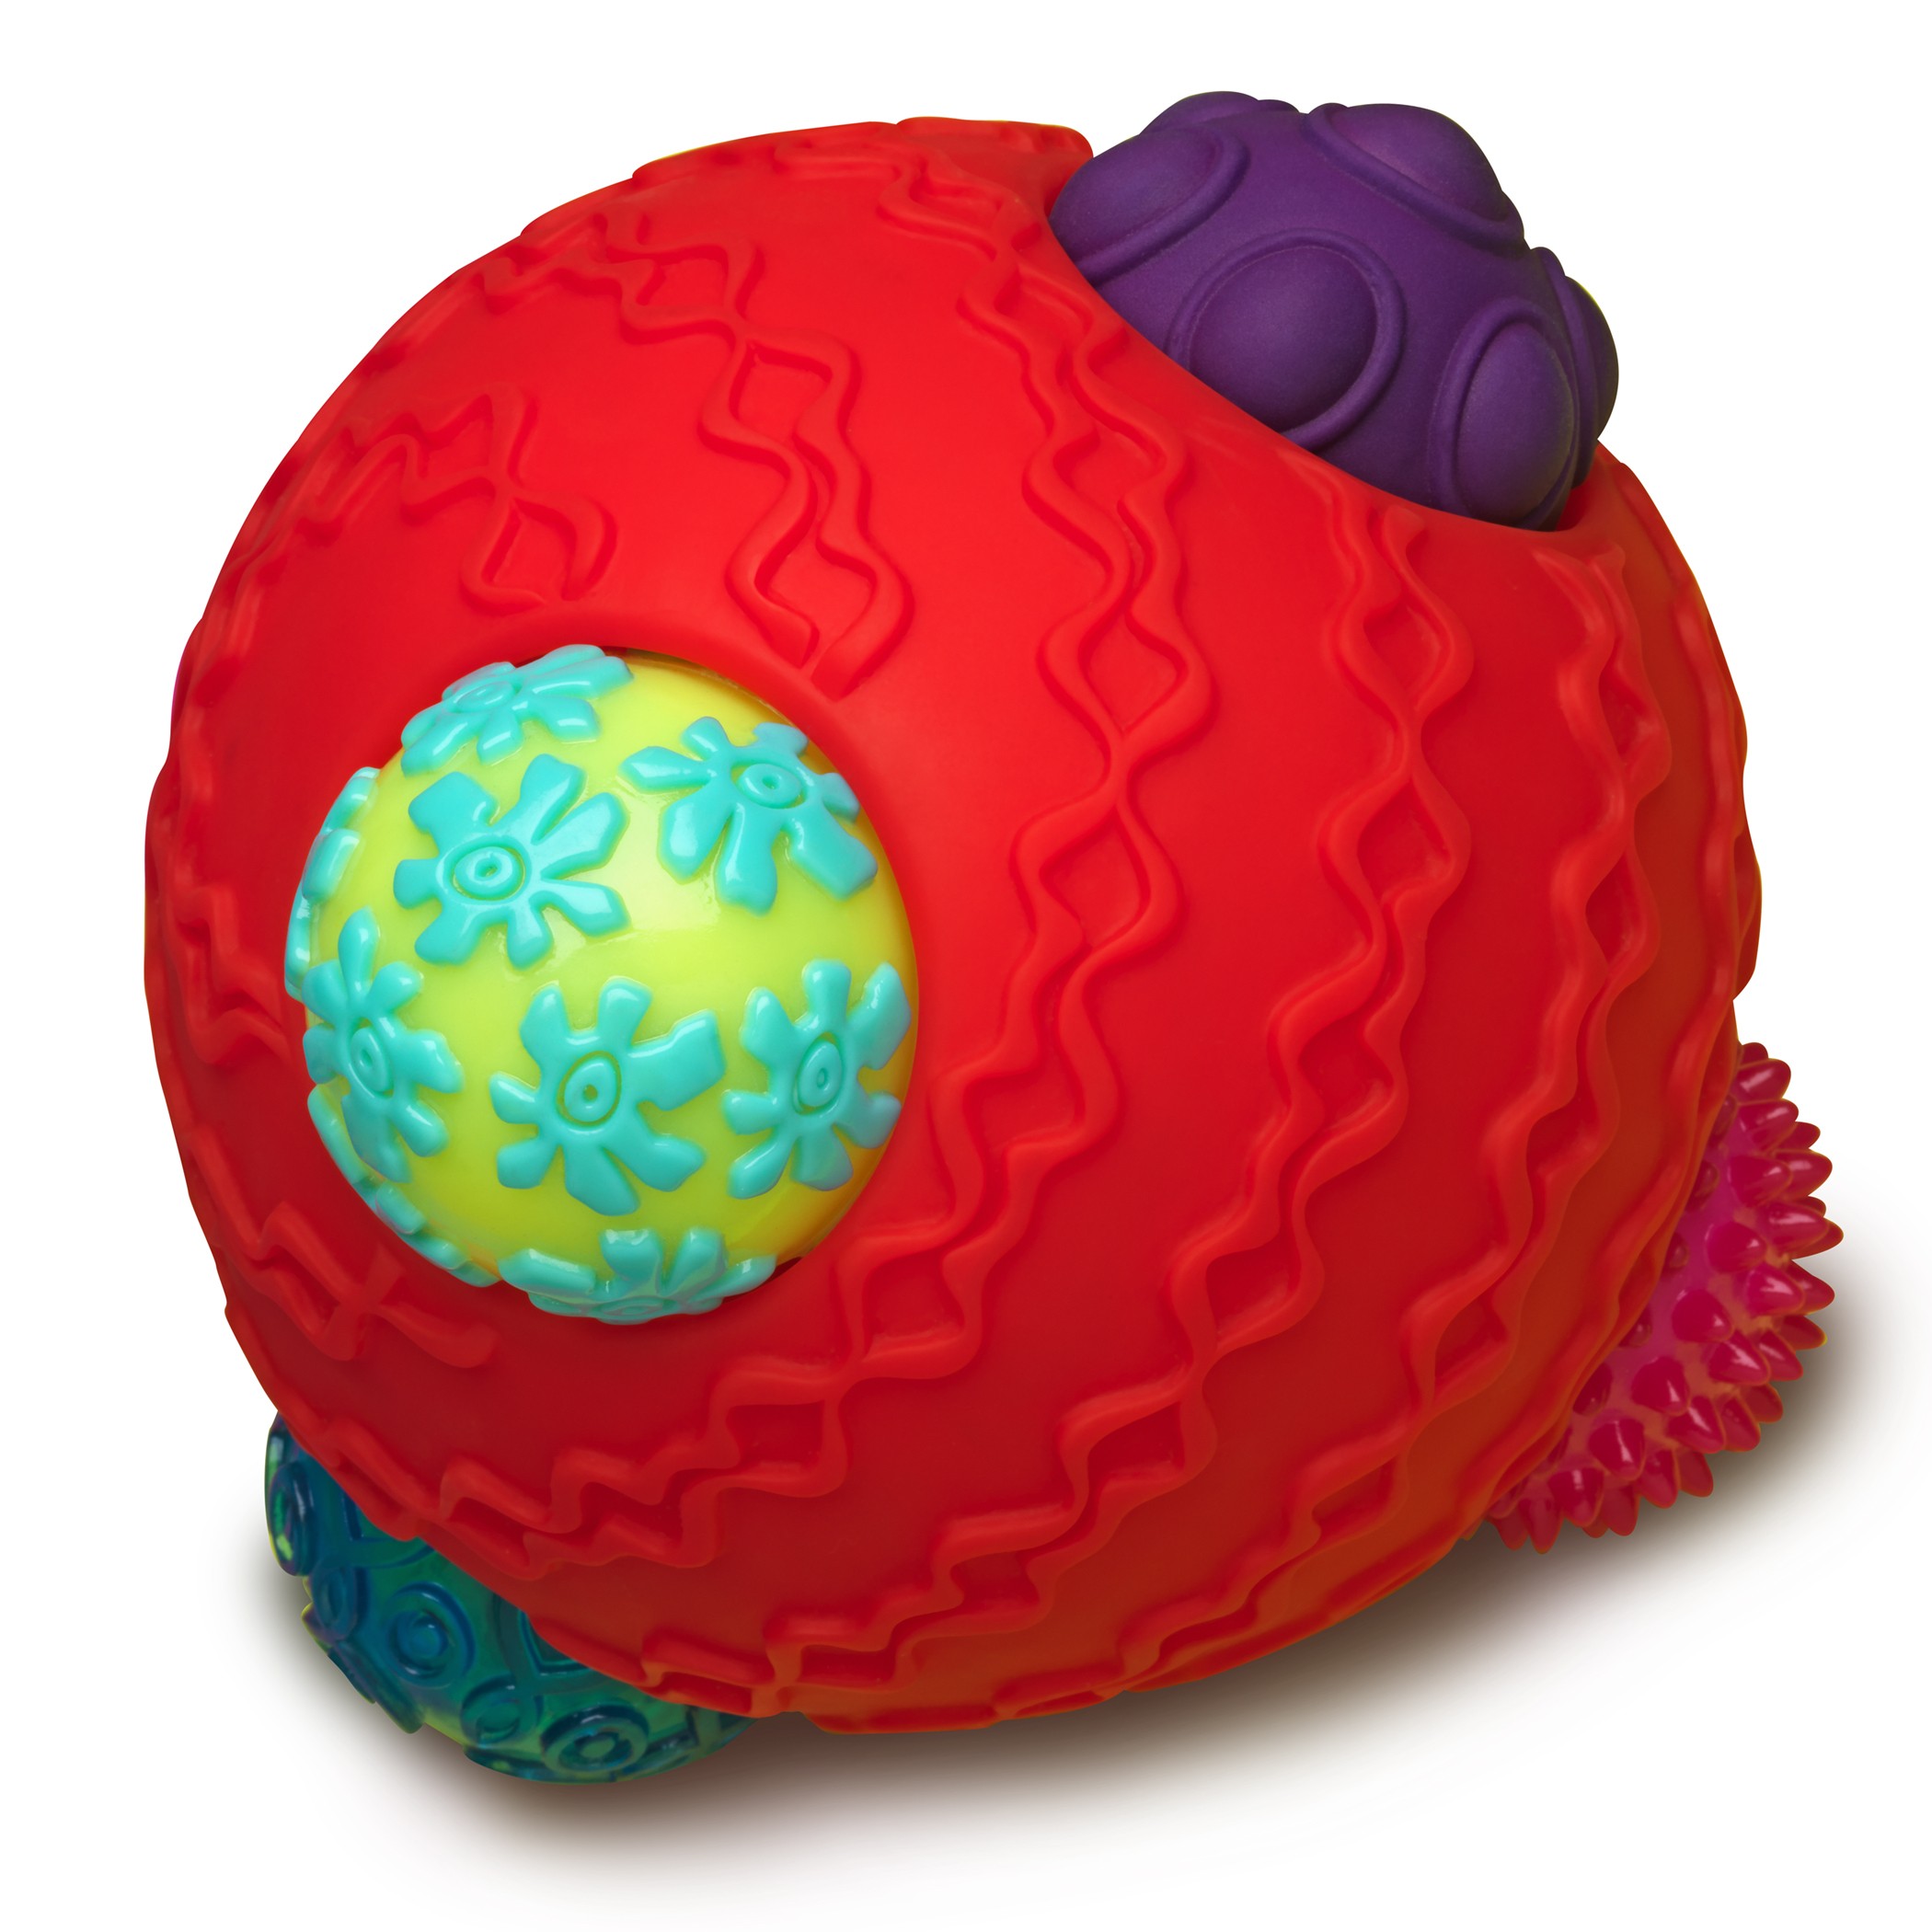 Btoys, ballyhoo Balls - kombinacyjny zestaw sensoryczny - kula z piłkami